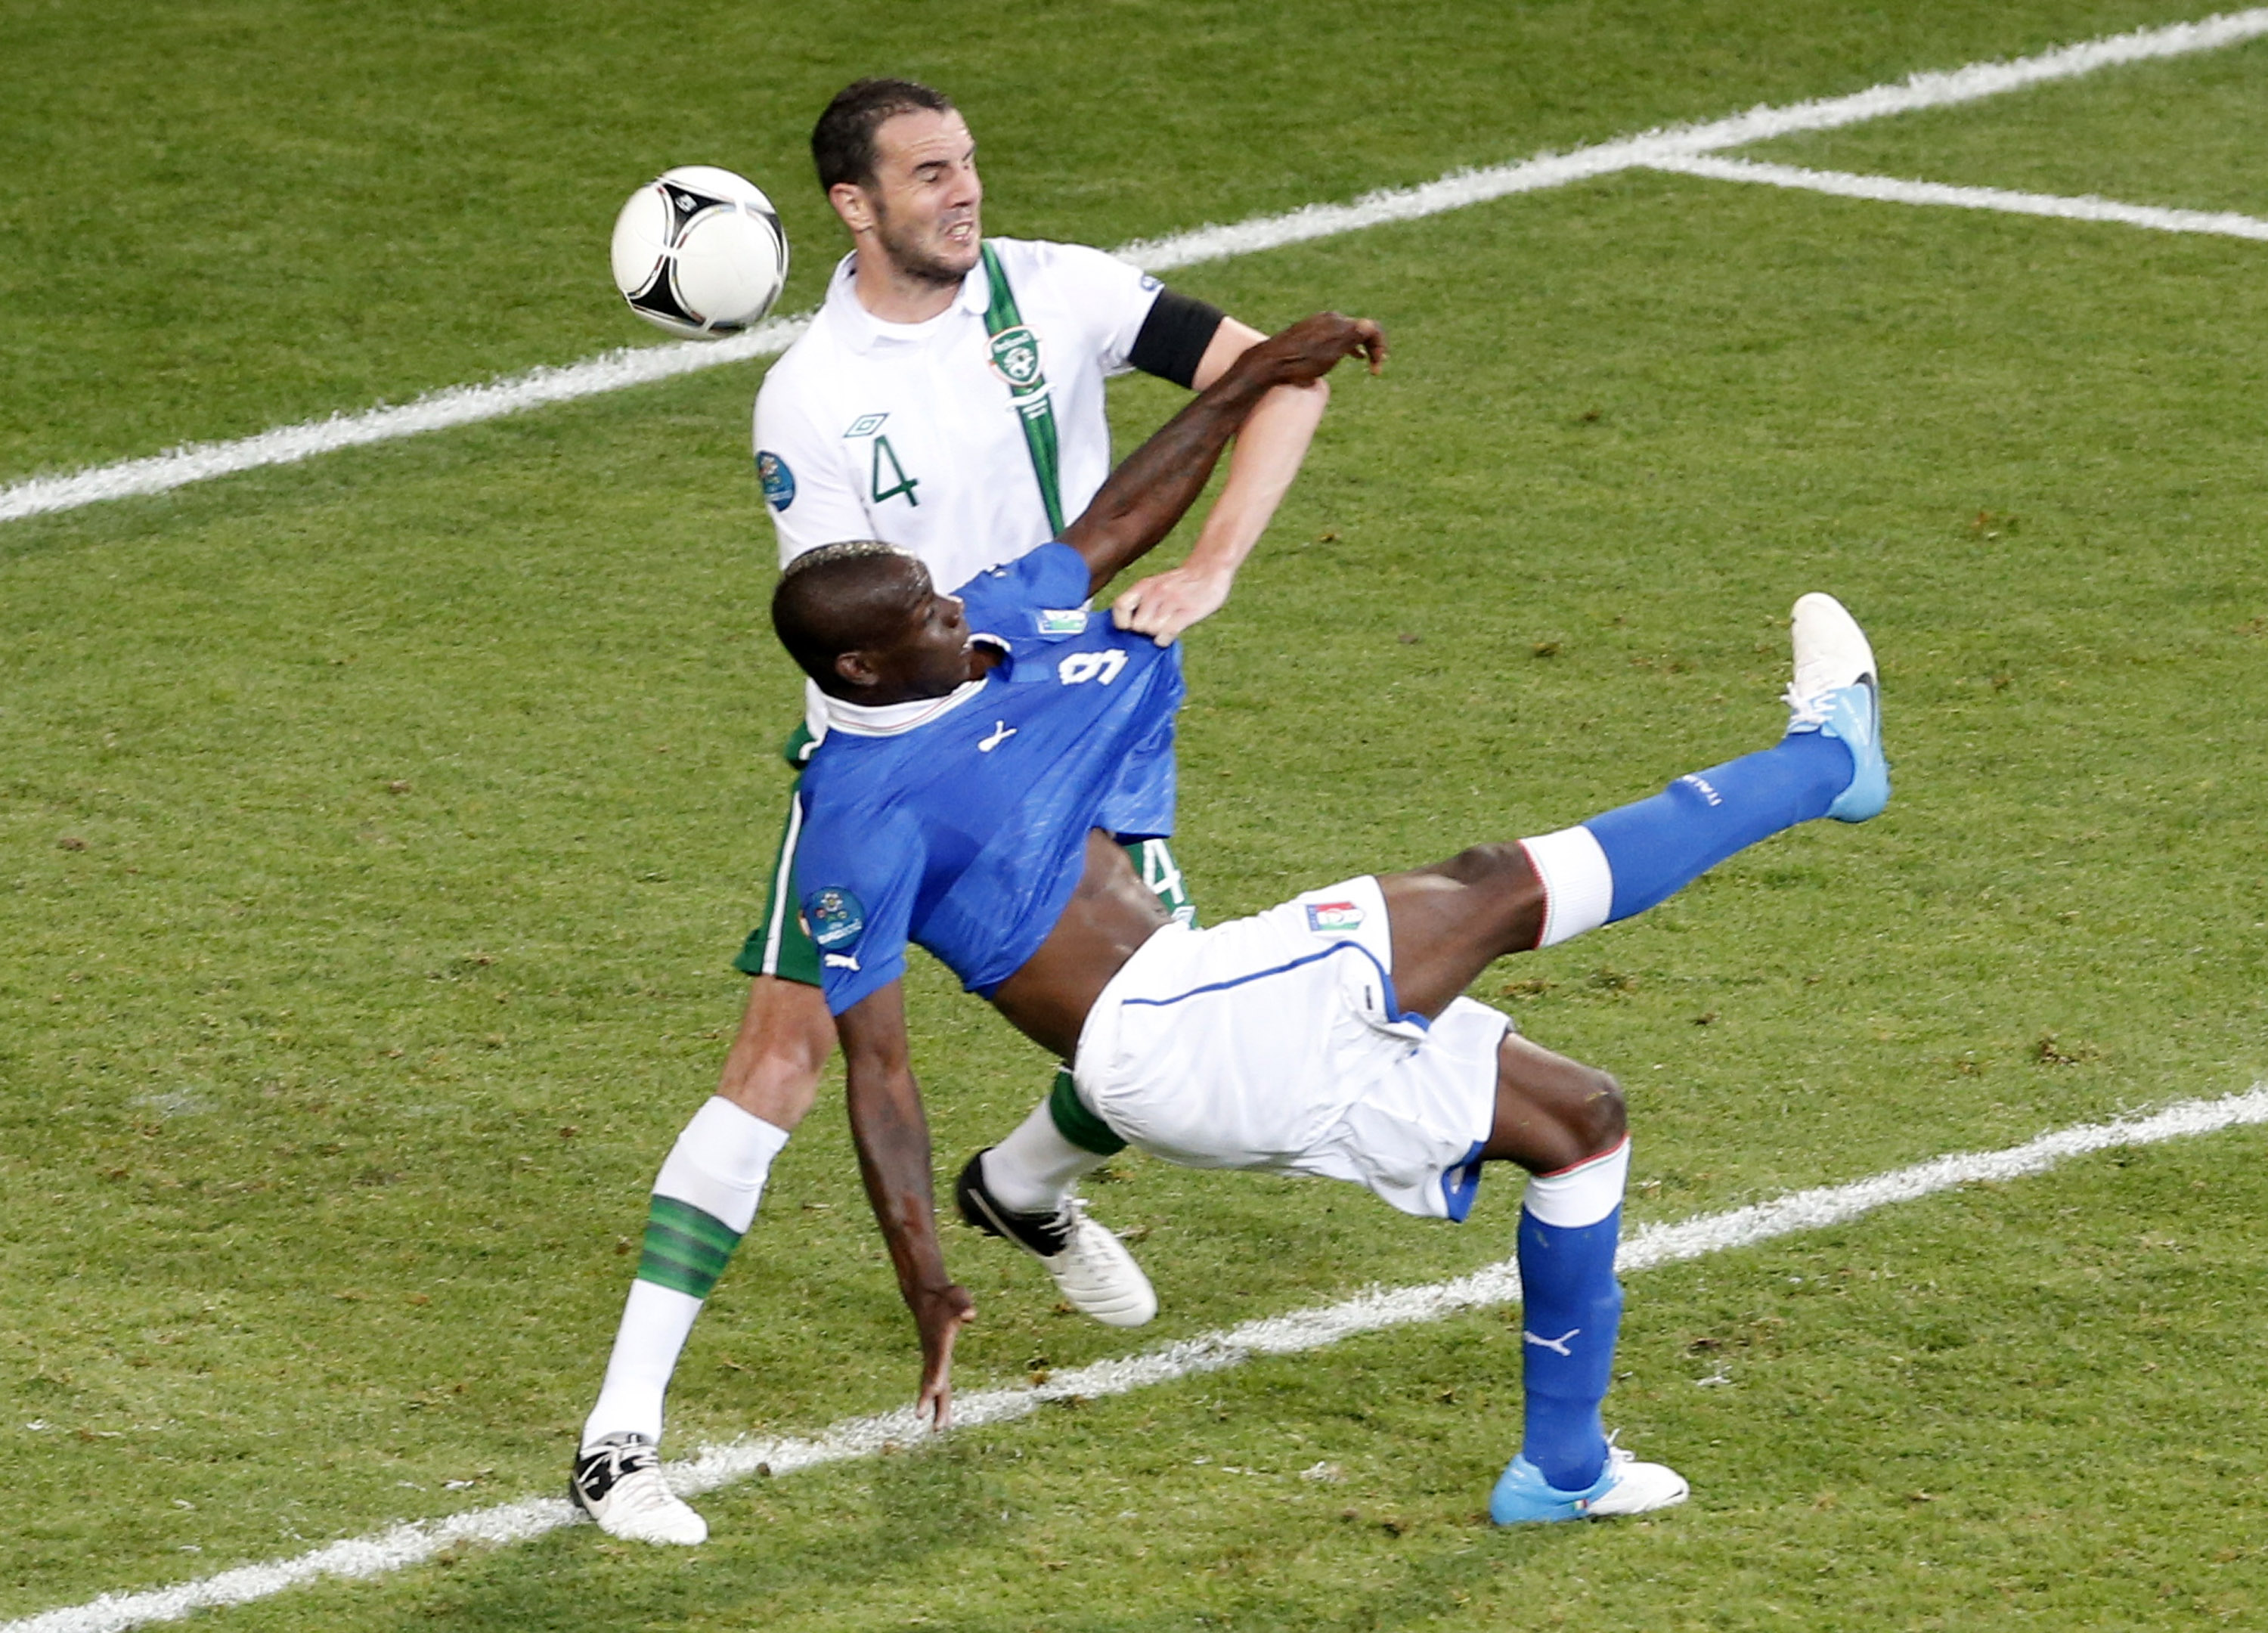 Maro Balotellis konstmål i 90:e minuten betydde 2-0 till Italien.